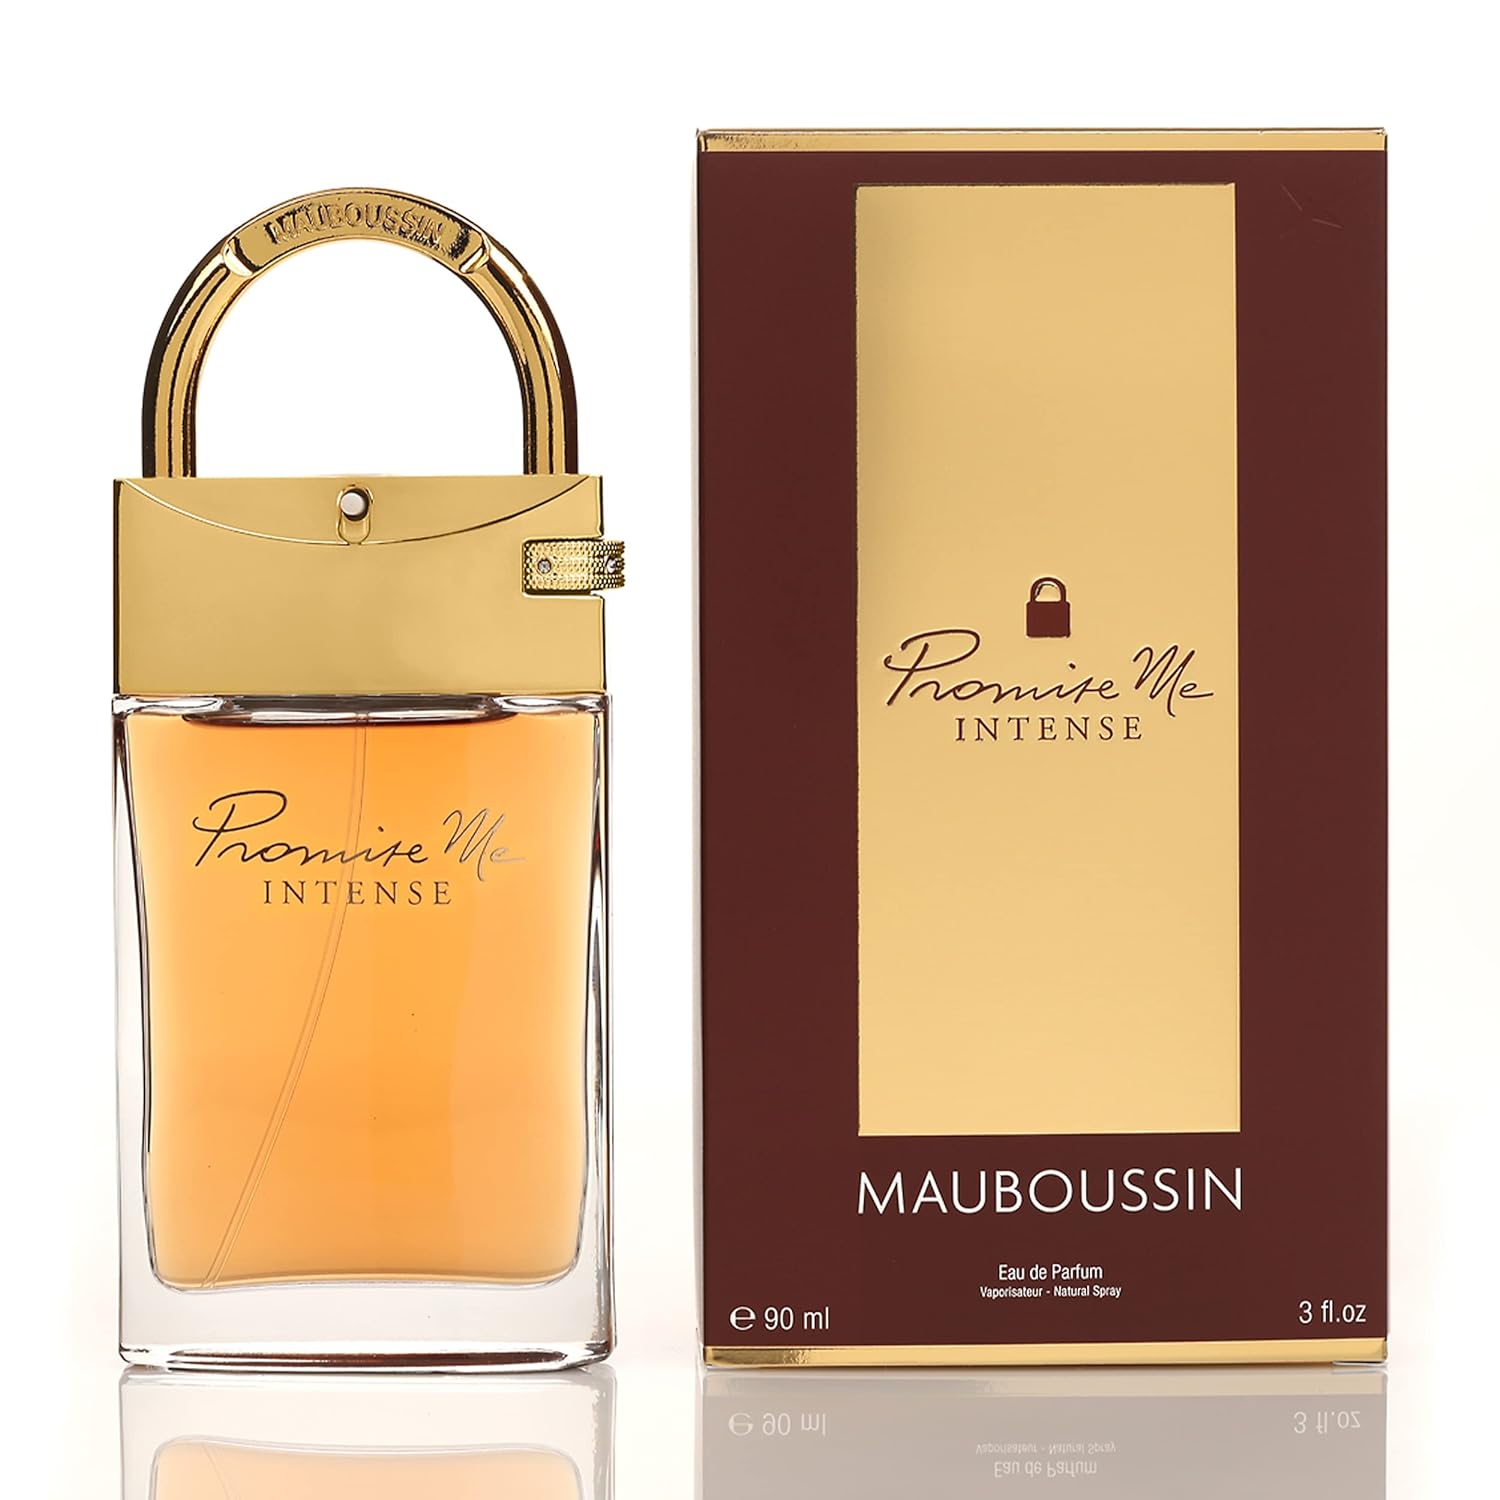 Mauboussin - Promise Me Intense - 90ml - Eau de Parfum für Damen - Orientalisch-blumiger & Köstlicher Duft